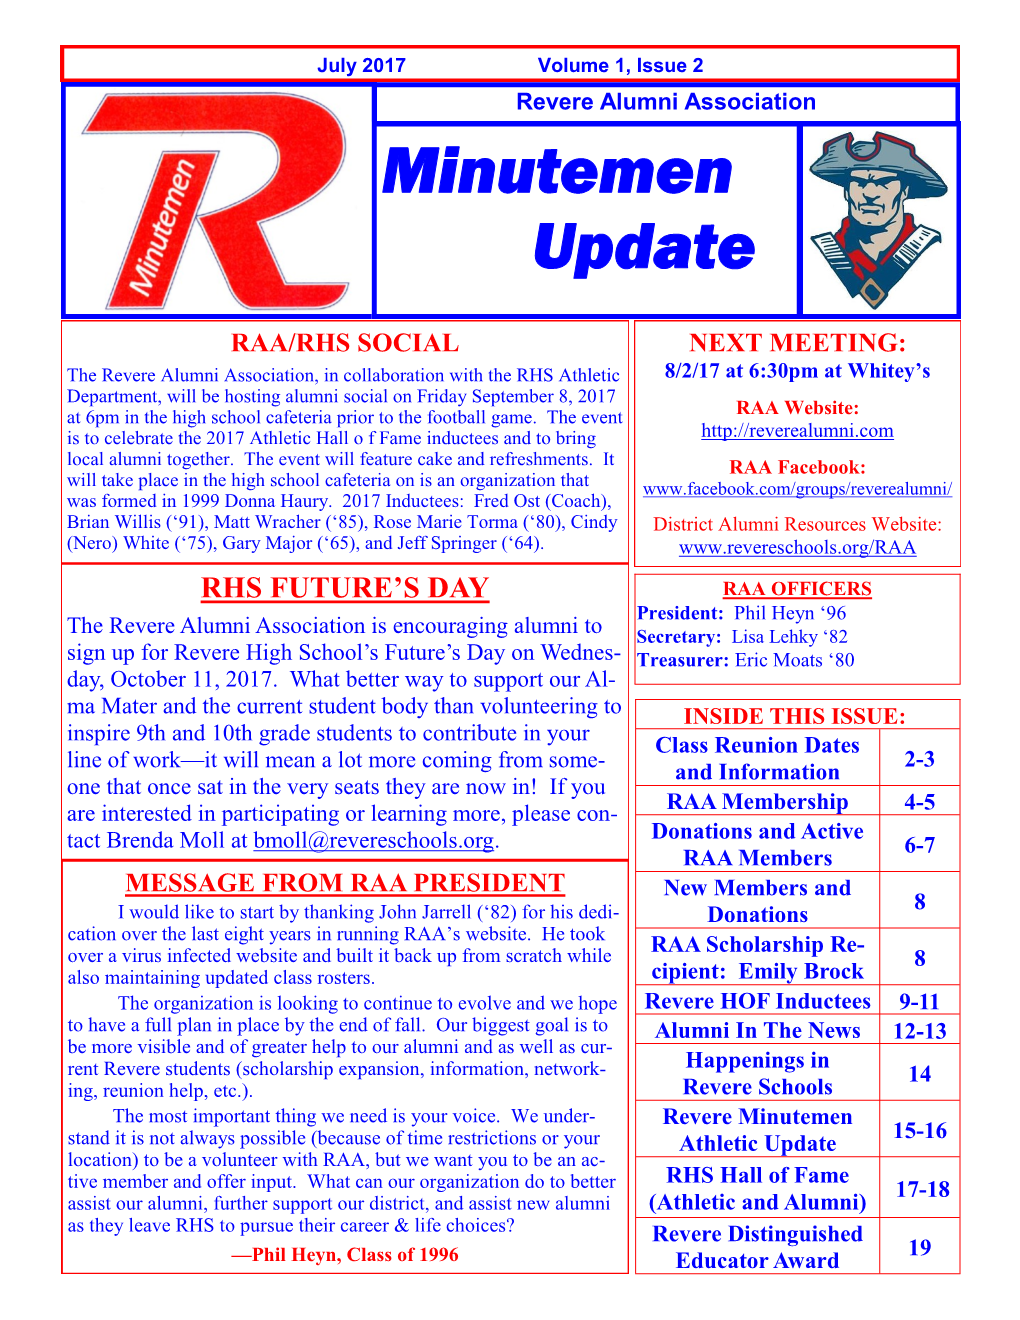 July 2017: Minutemen Update-Volume 1, Issue 2